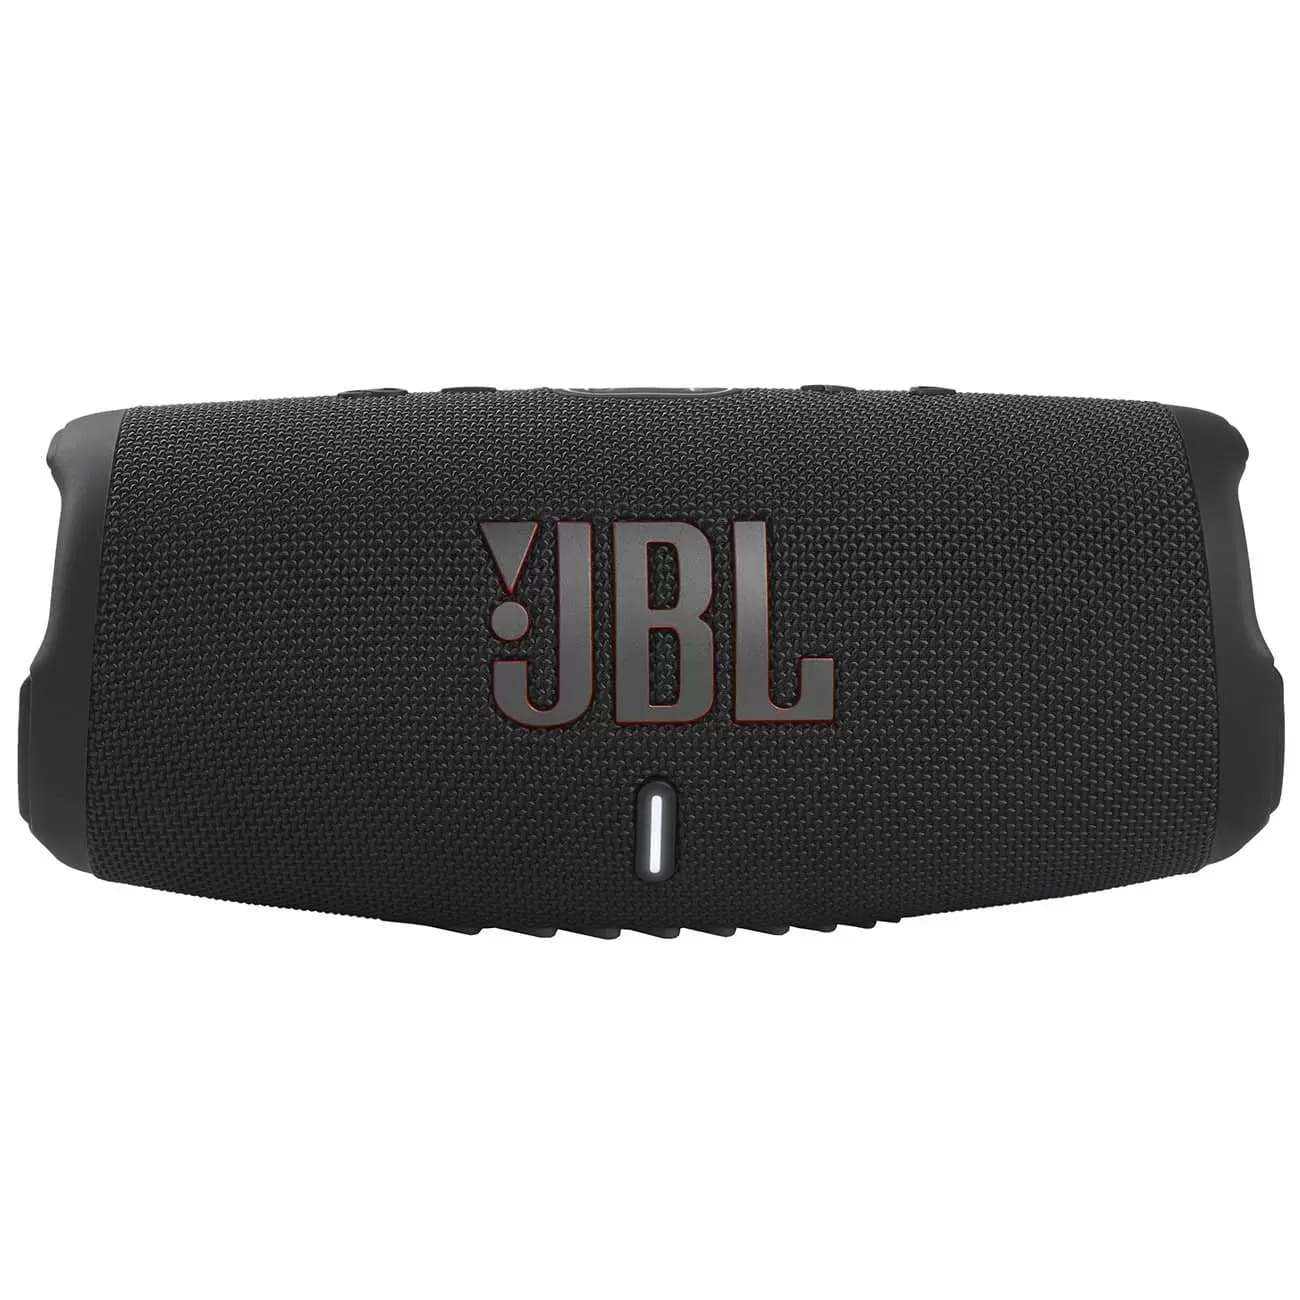 Купить портативная колонка jbl charge 5 black JBL в официальном магазине Apple, Samsung, Xiaomi. iPixel.ru Купить, заказ, кредит, рассрочка, отзывы,  характеристики, цена,  фотографии, в подарок.